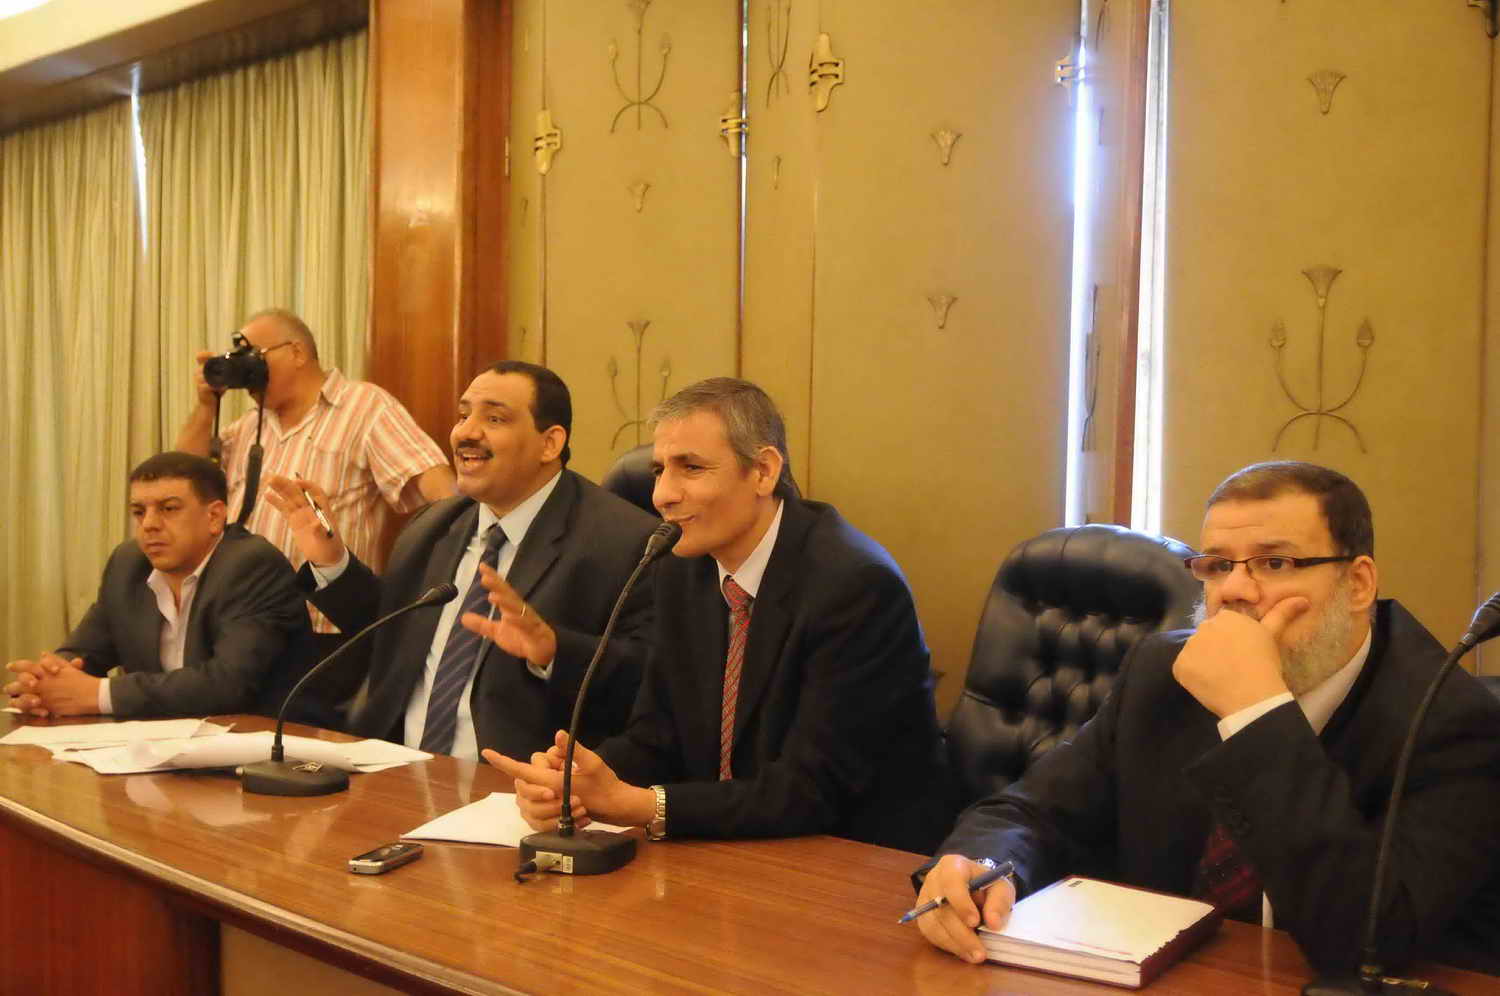 Former MP Mohamed El-Omda, left, speaks alongside colleagues in the Parliament building Mohamed Omar